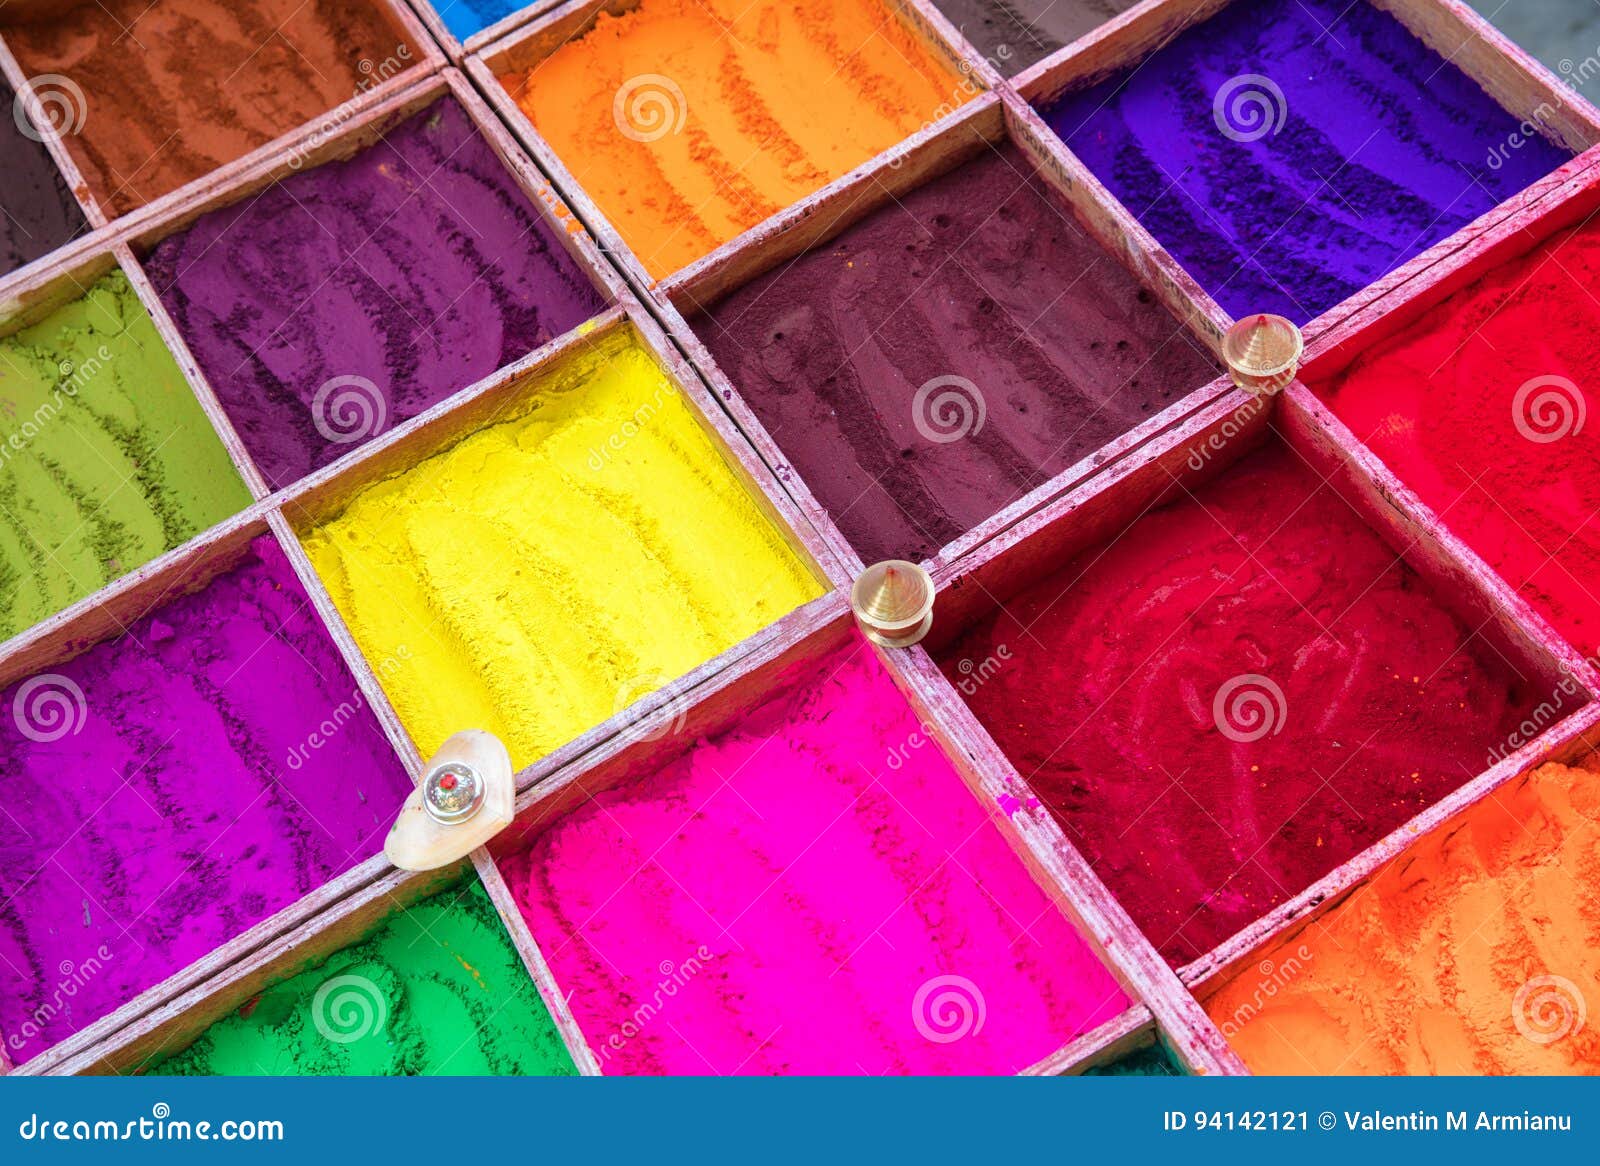 powder dyes